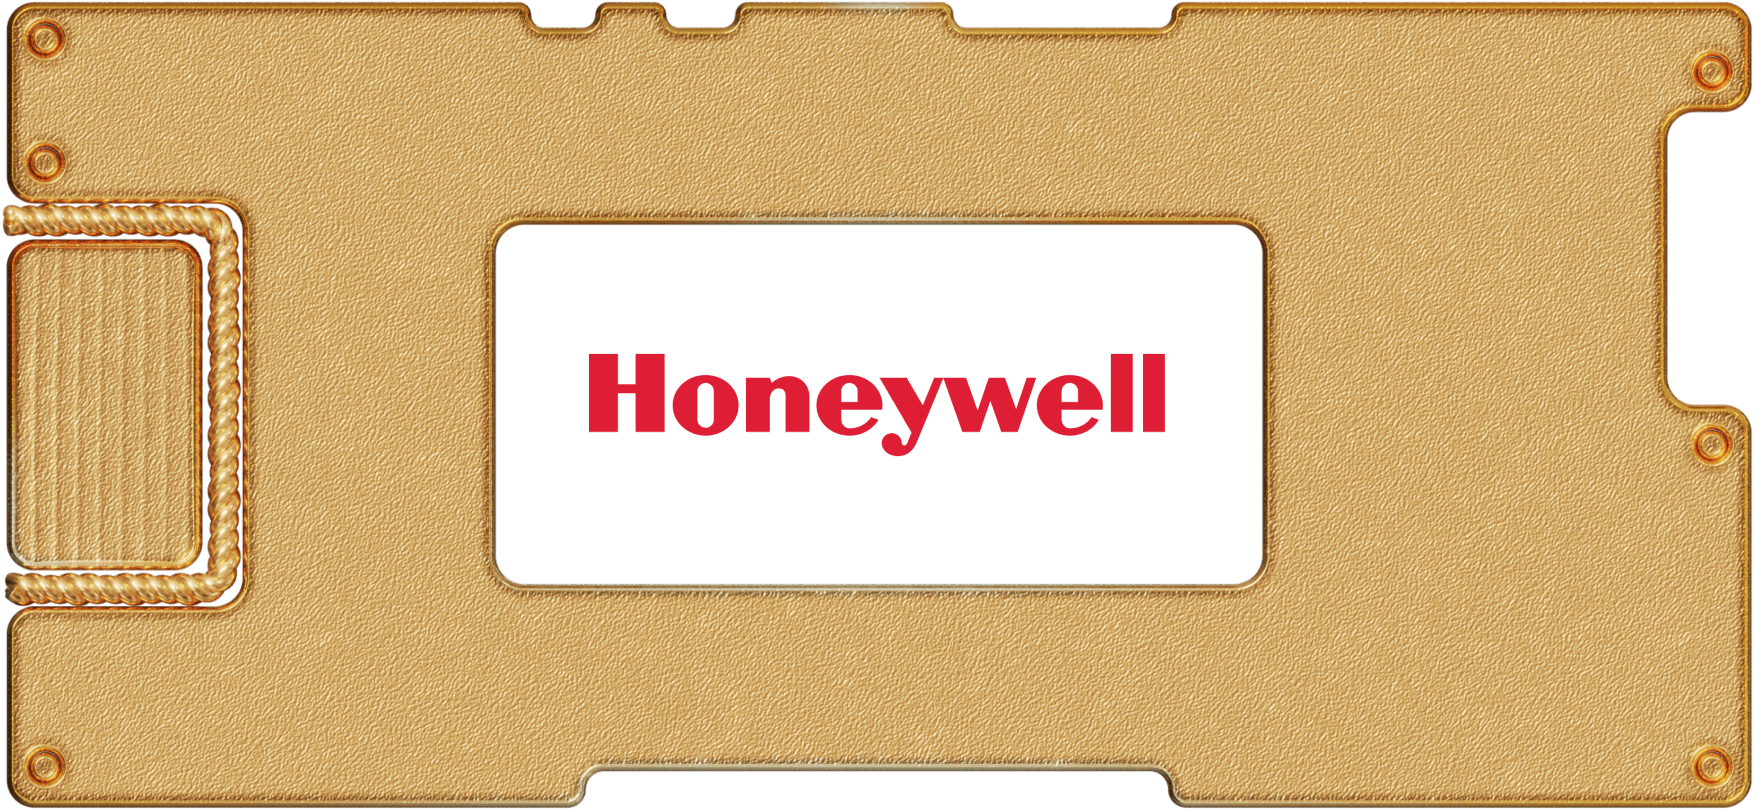 Инвестидея: Honeywell, потому что медом намазано